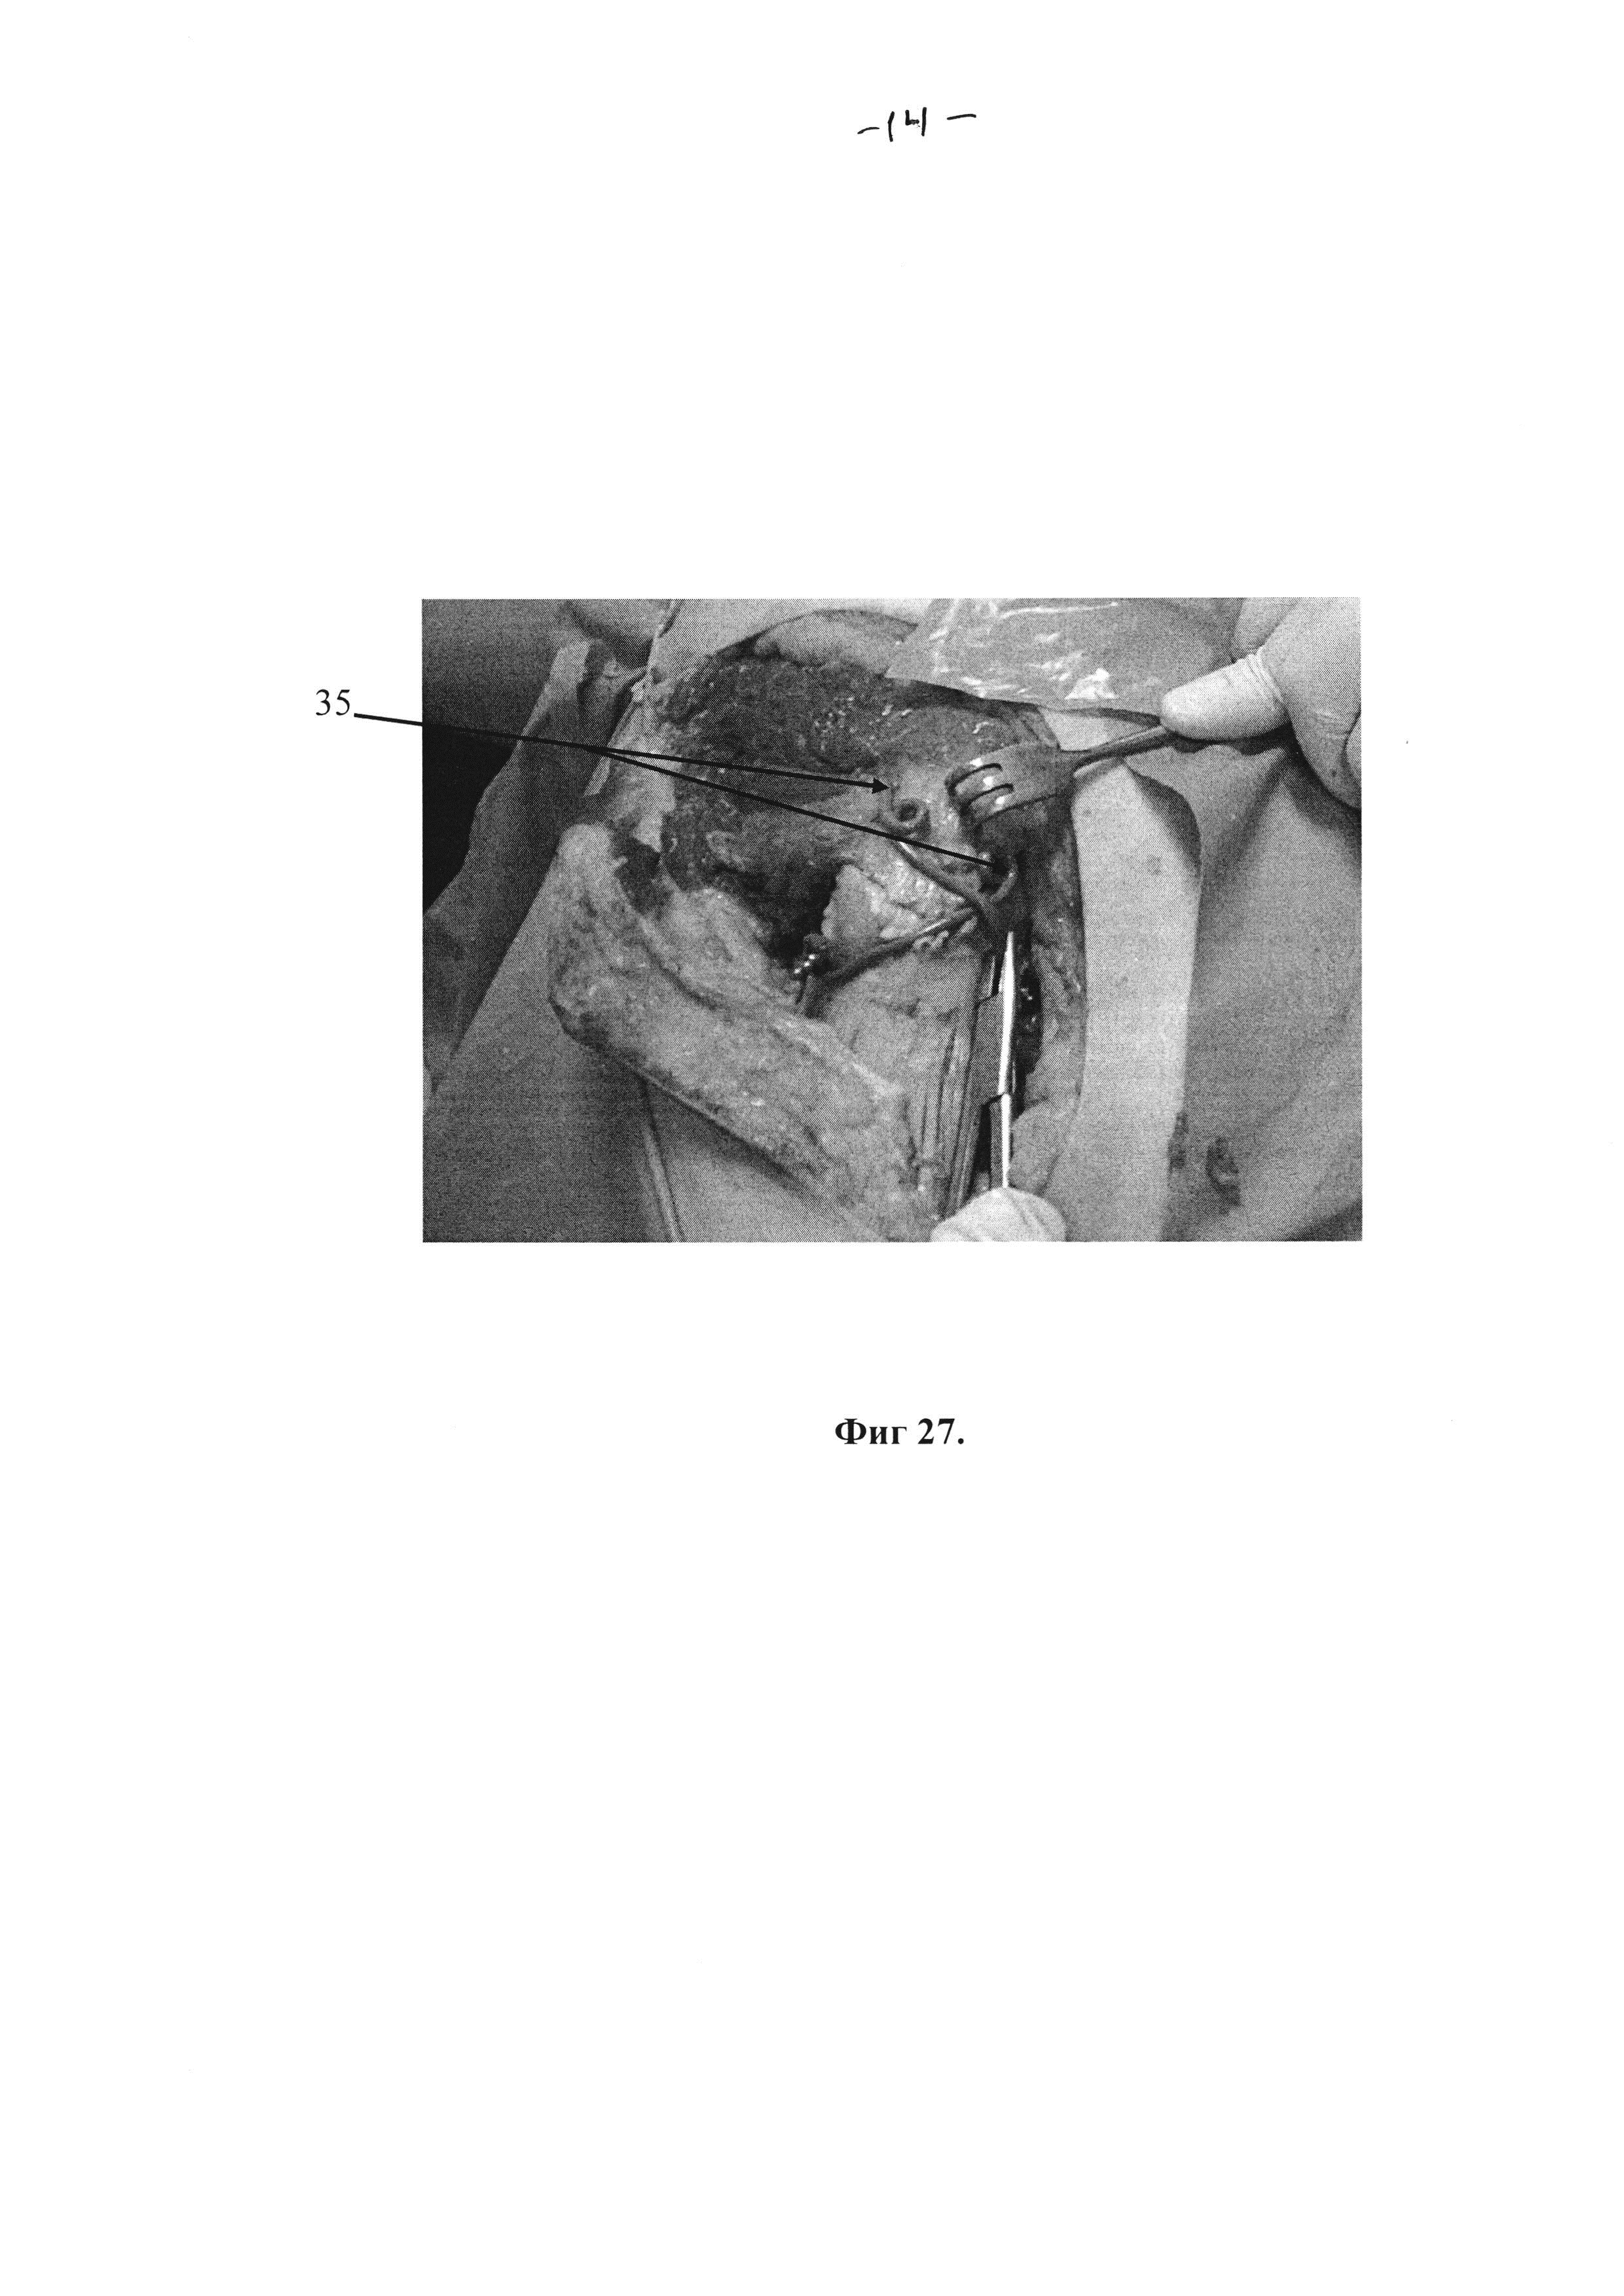 Способ экспериментального анатомо-хирургического обоснования оперативного доступа к тазобедренному суставу при чрезвертлужных переломах костей таза